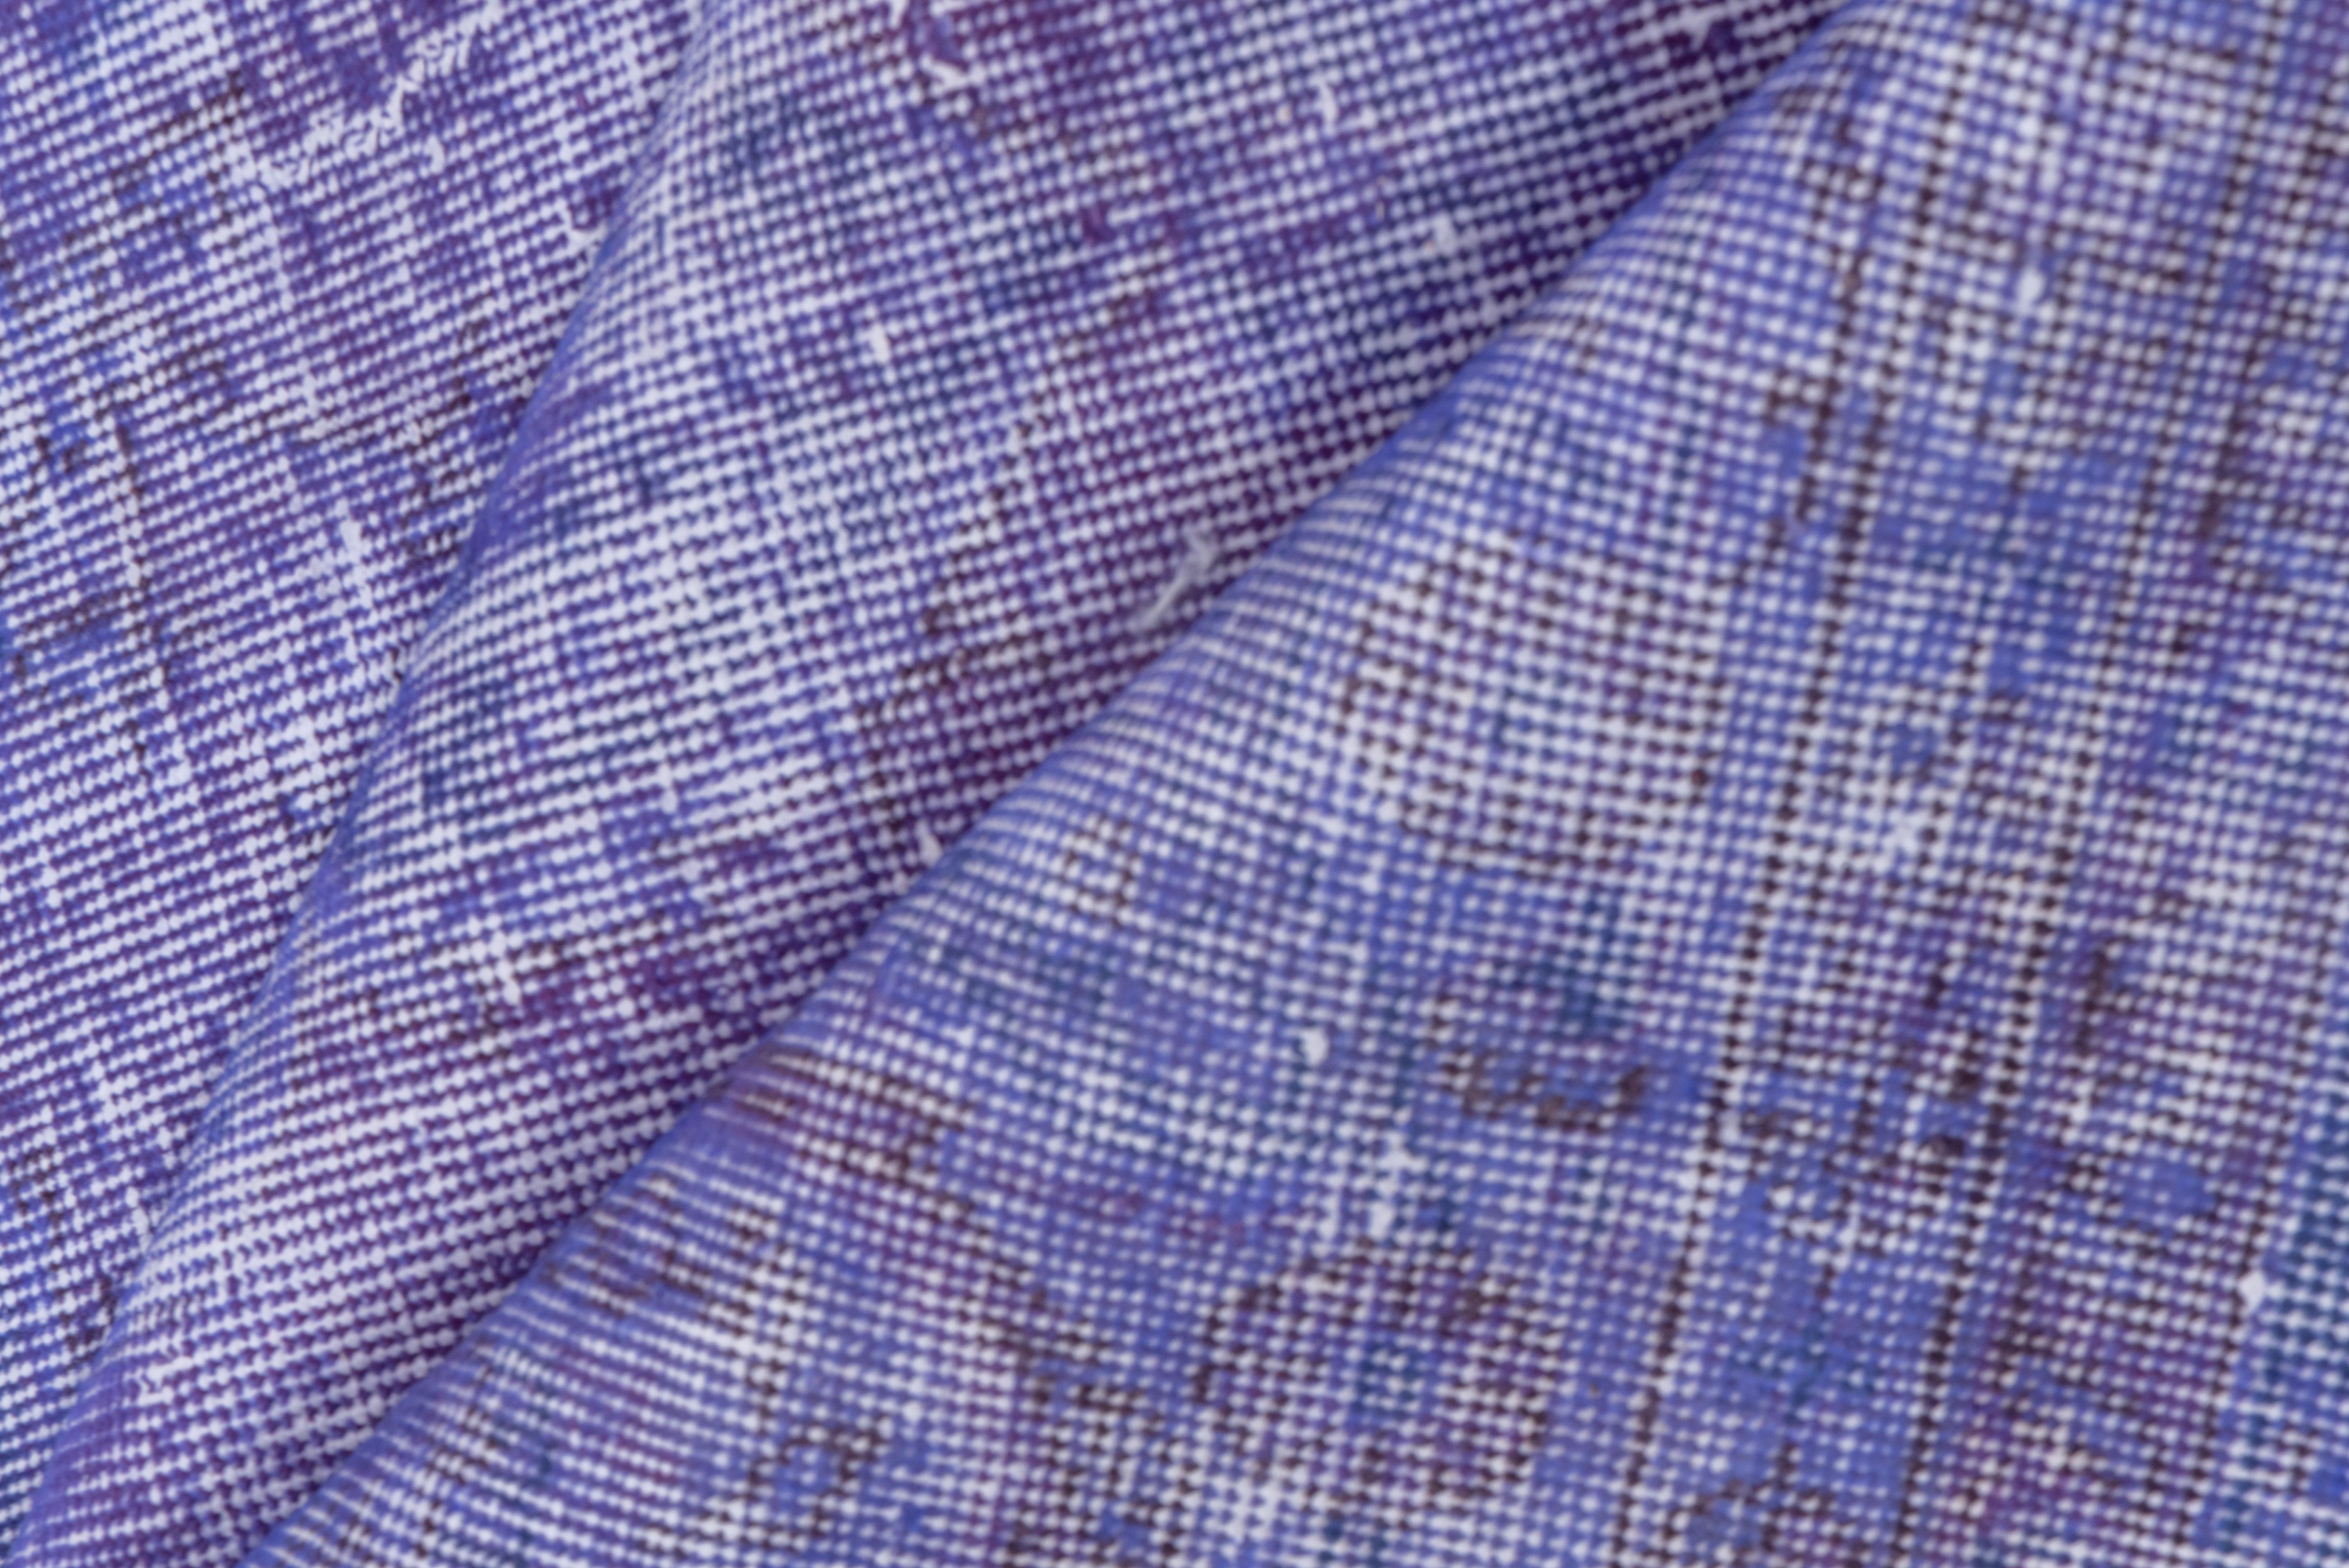 Dieser hellviolette, türkisch gefärbte Sparta-Teppich hat ein Muster, das durch die Abnutzung jenseits der allgemeinen Notlage definiert ist. Vertikale und horizontale weiße Streifen kreuzen sich in der Nähe der Mitte. Shabby-Chic-Bedingungen und